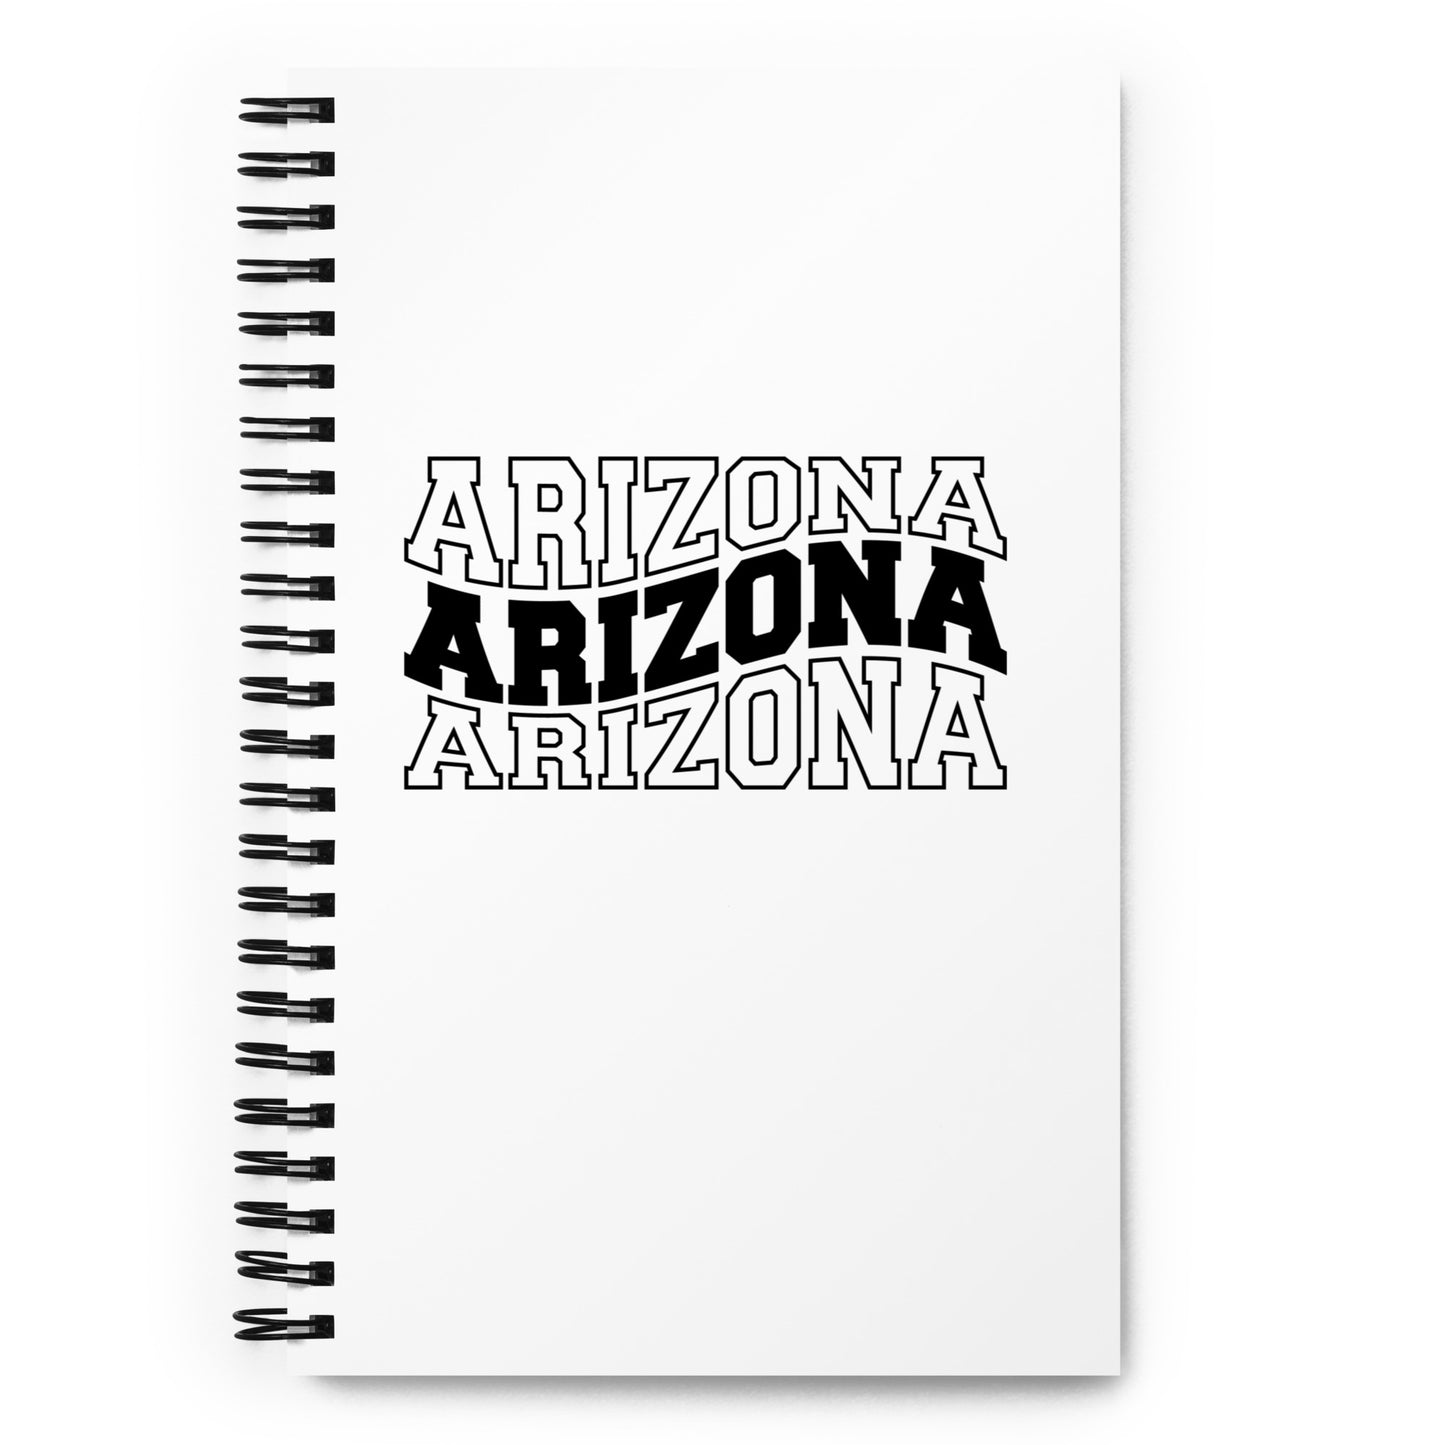 Arizona Spiral notebook